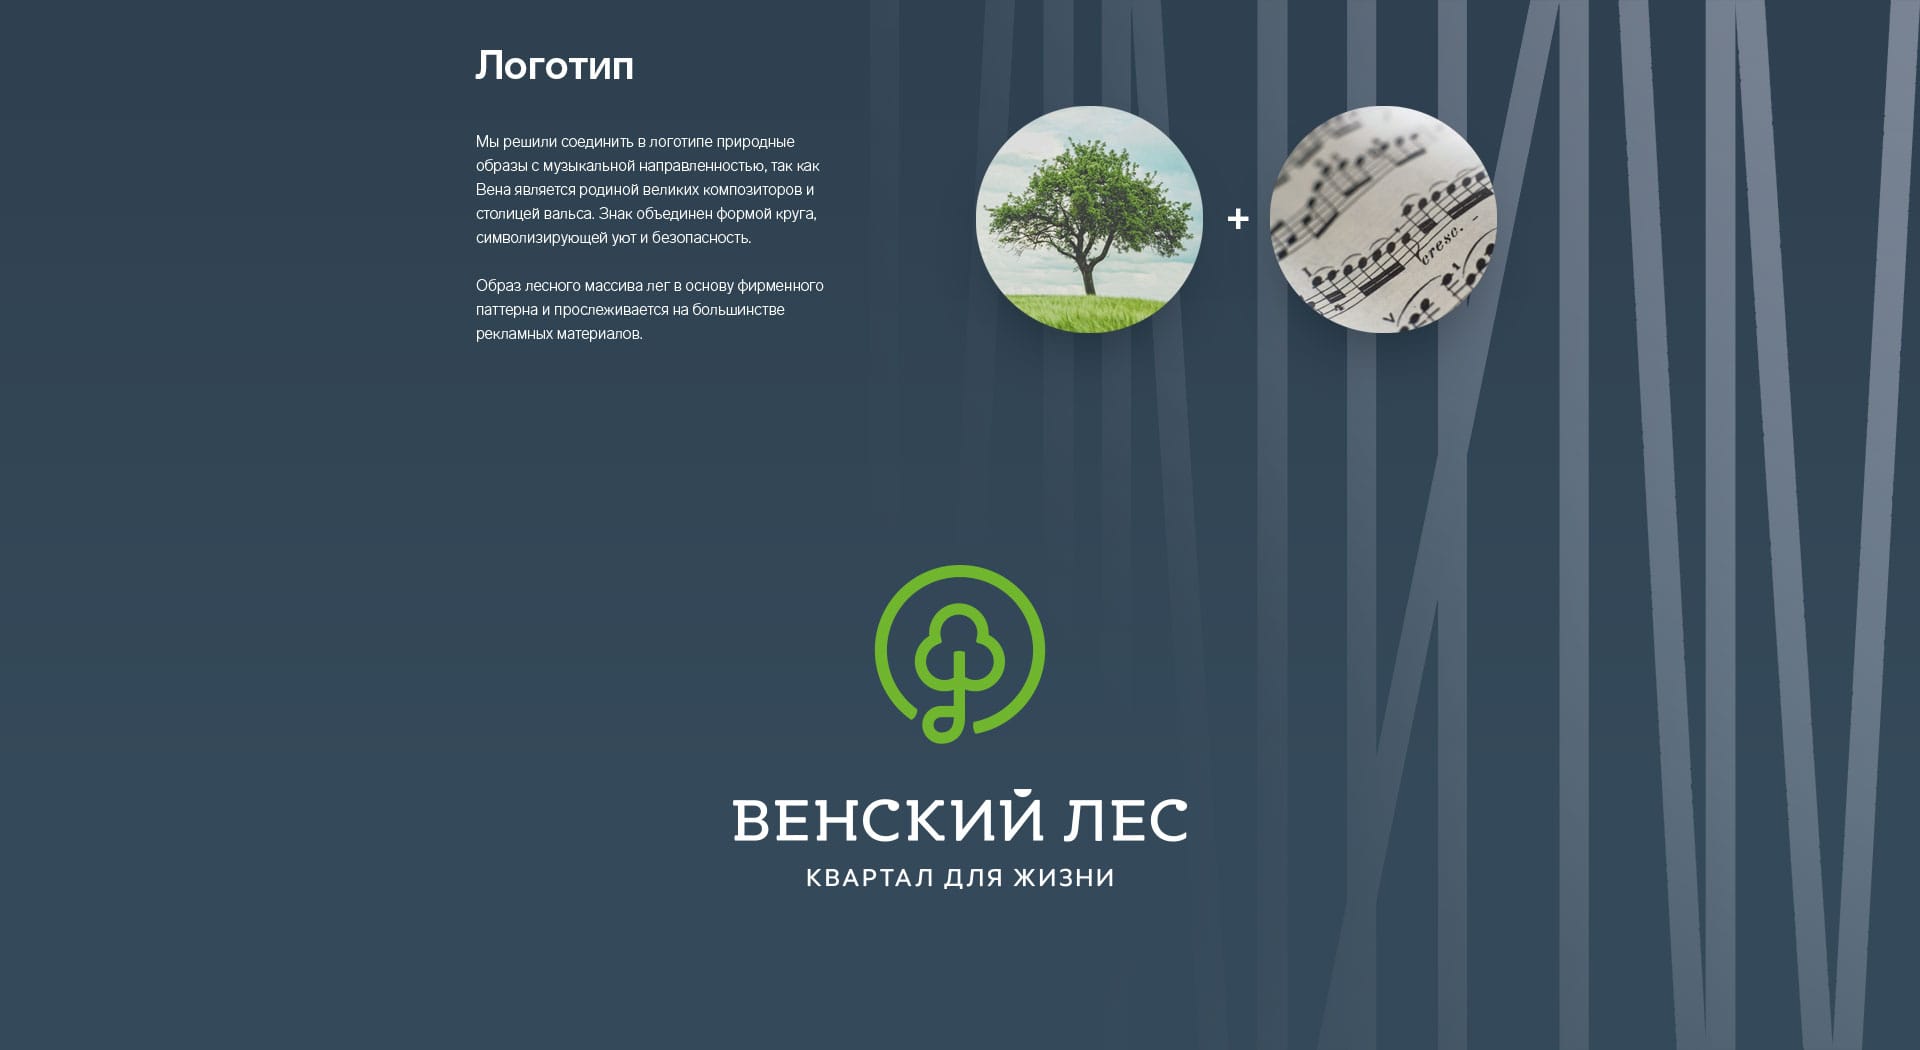 Венский лес  | Консалтинговое агентство GMK